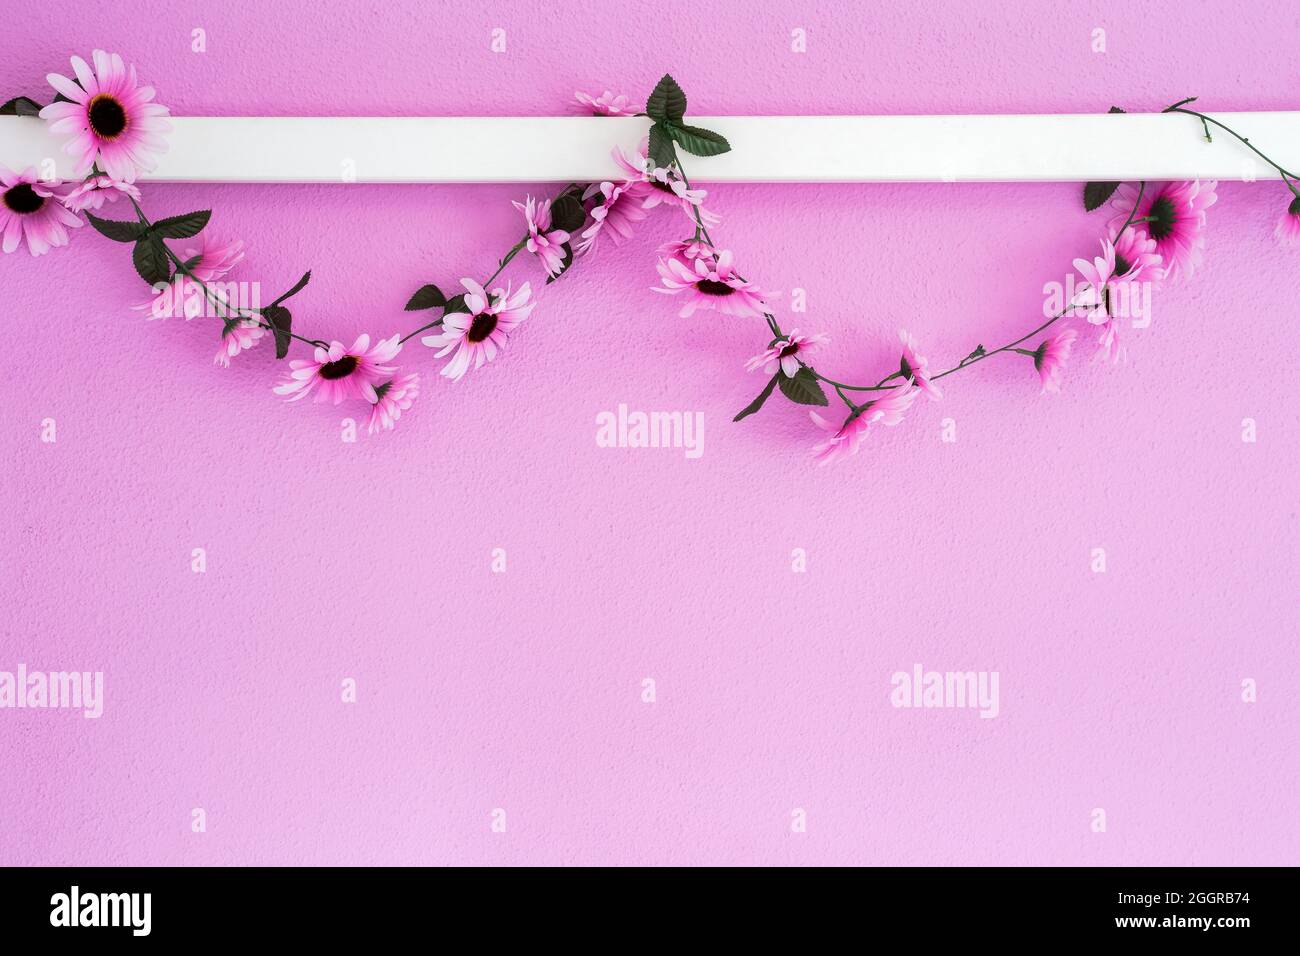 Allegro, colorato rosa, margherite viola garland appeso su sfondo rosa parete texture. Bello design moderno con spazio copia Foto Stock